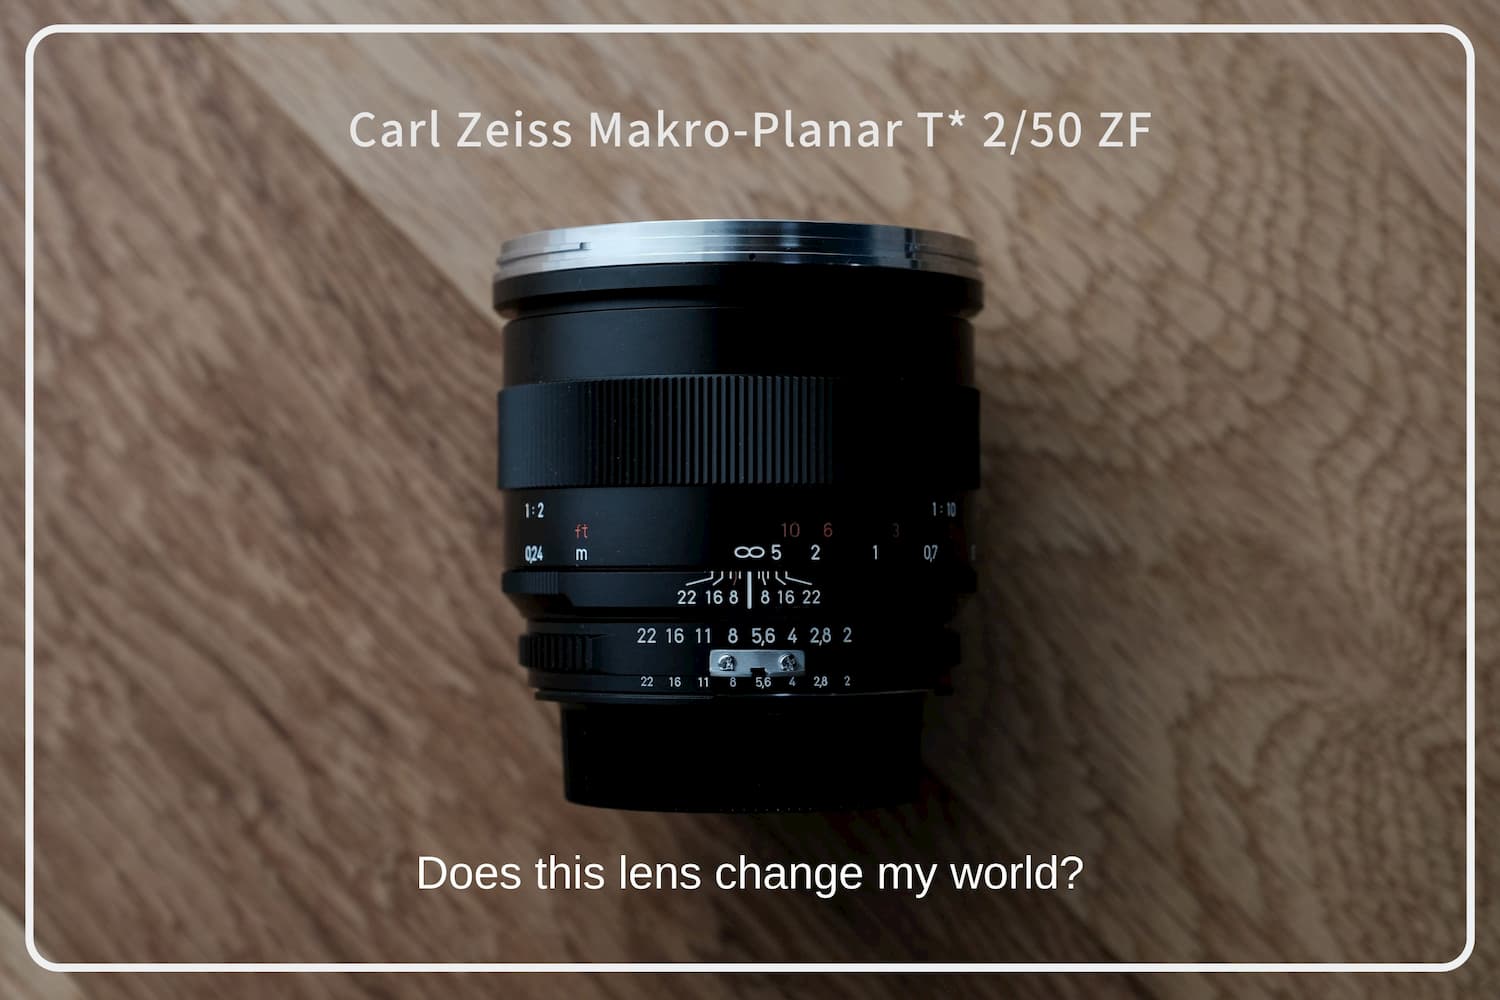 Carl Zeiss Makro-Planar T* 2/50 ZF